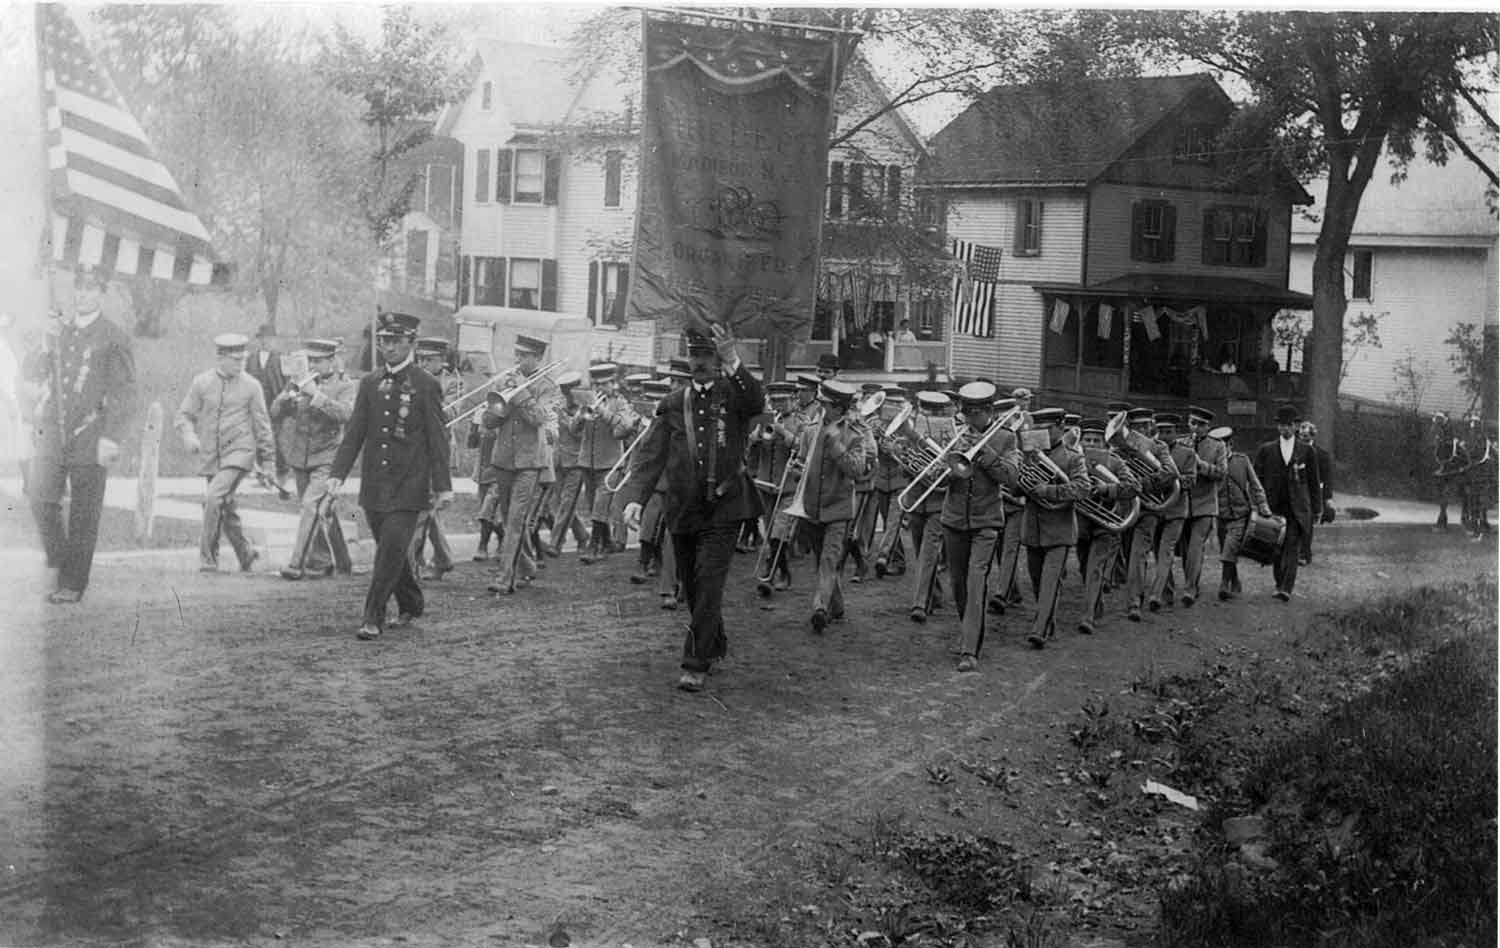 1909 Dedication & Parade